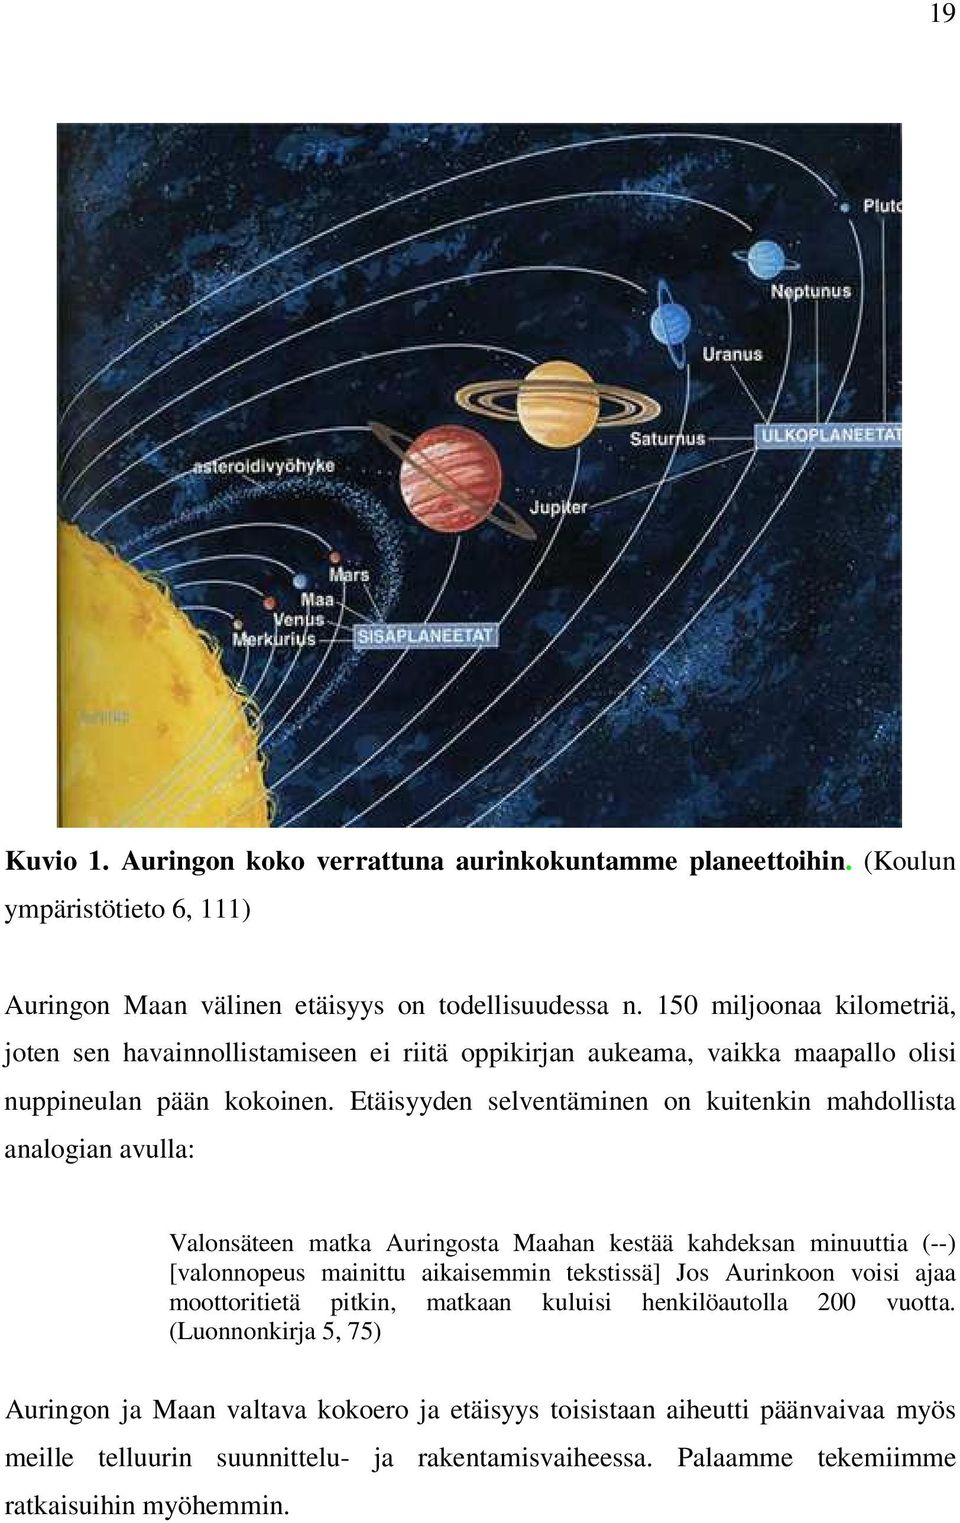 Etäisyyden selventäminen on kuitenkin mahdollista analogian avulla: Valonsäteen matka Auringosta Maahan kestää kahdeksan minuuttia (--) [valonnopeus mainittu aikaisemmin tekstissä] Jos